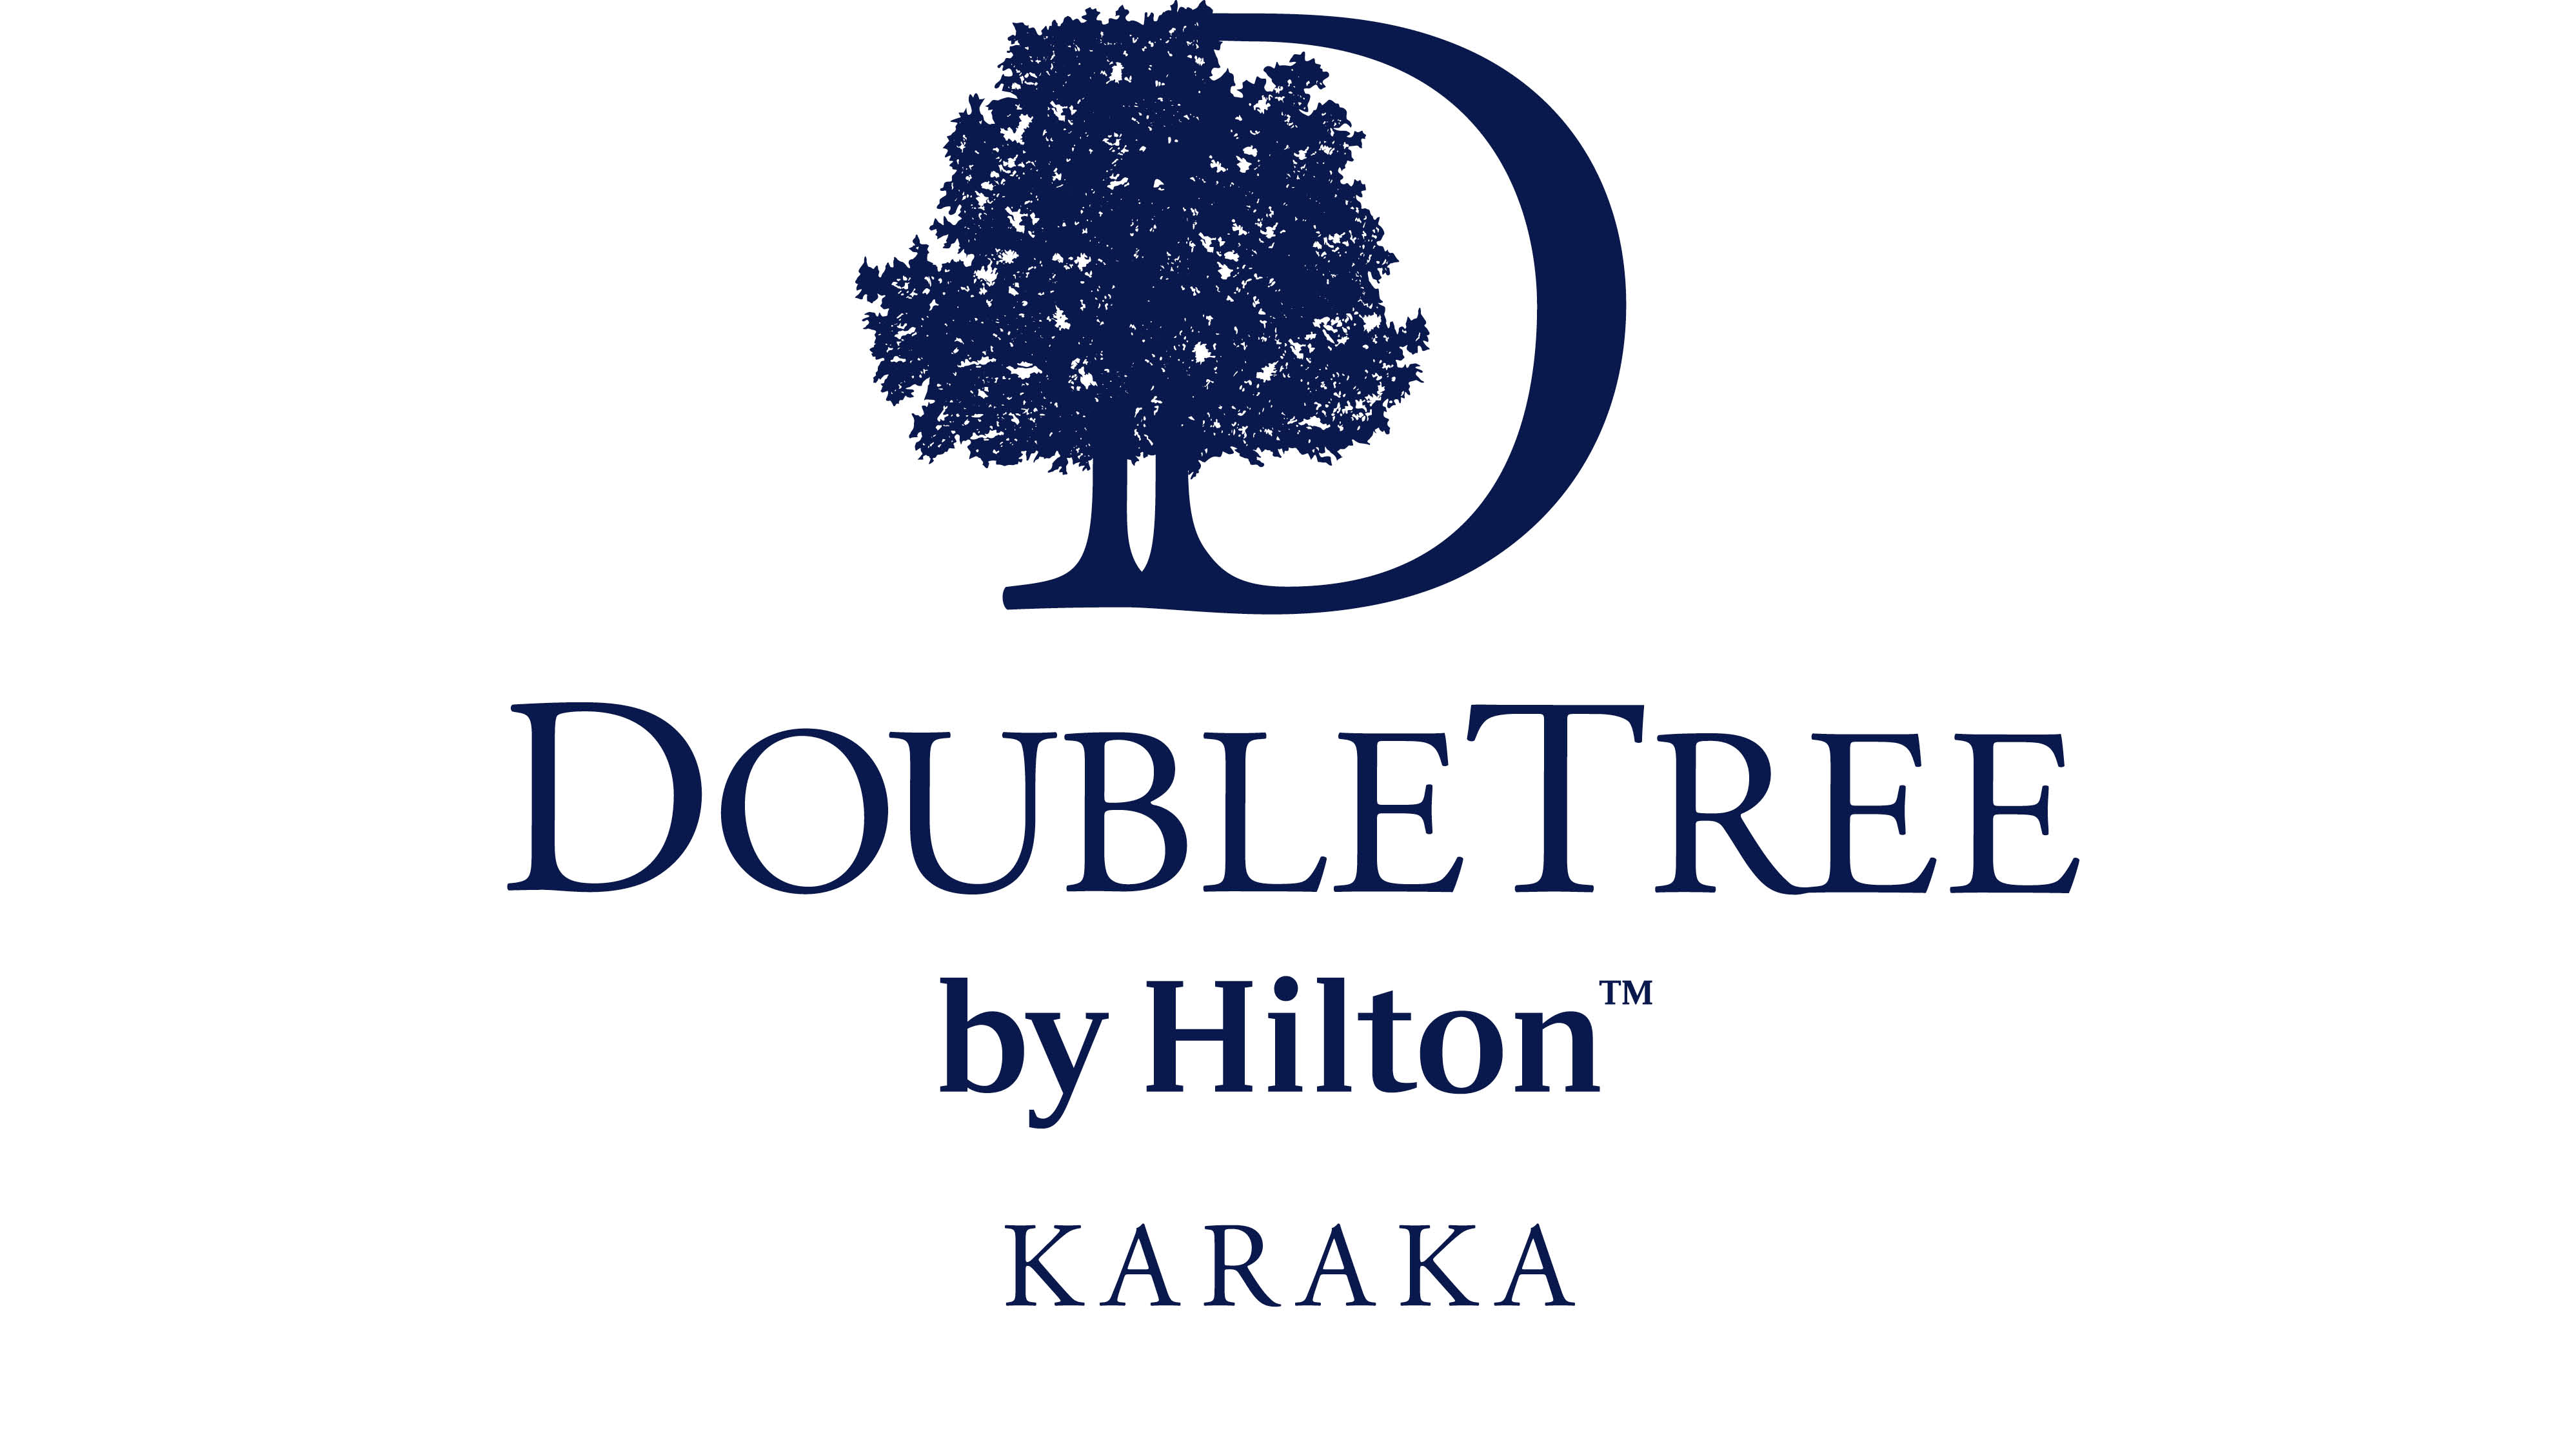 
DoubleTree by Hilton Karaka